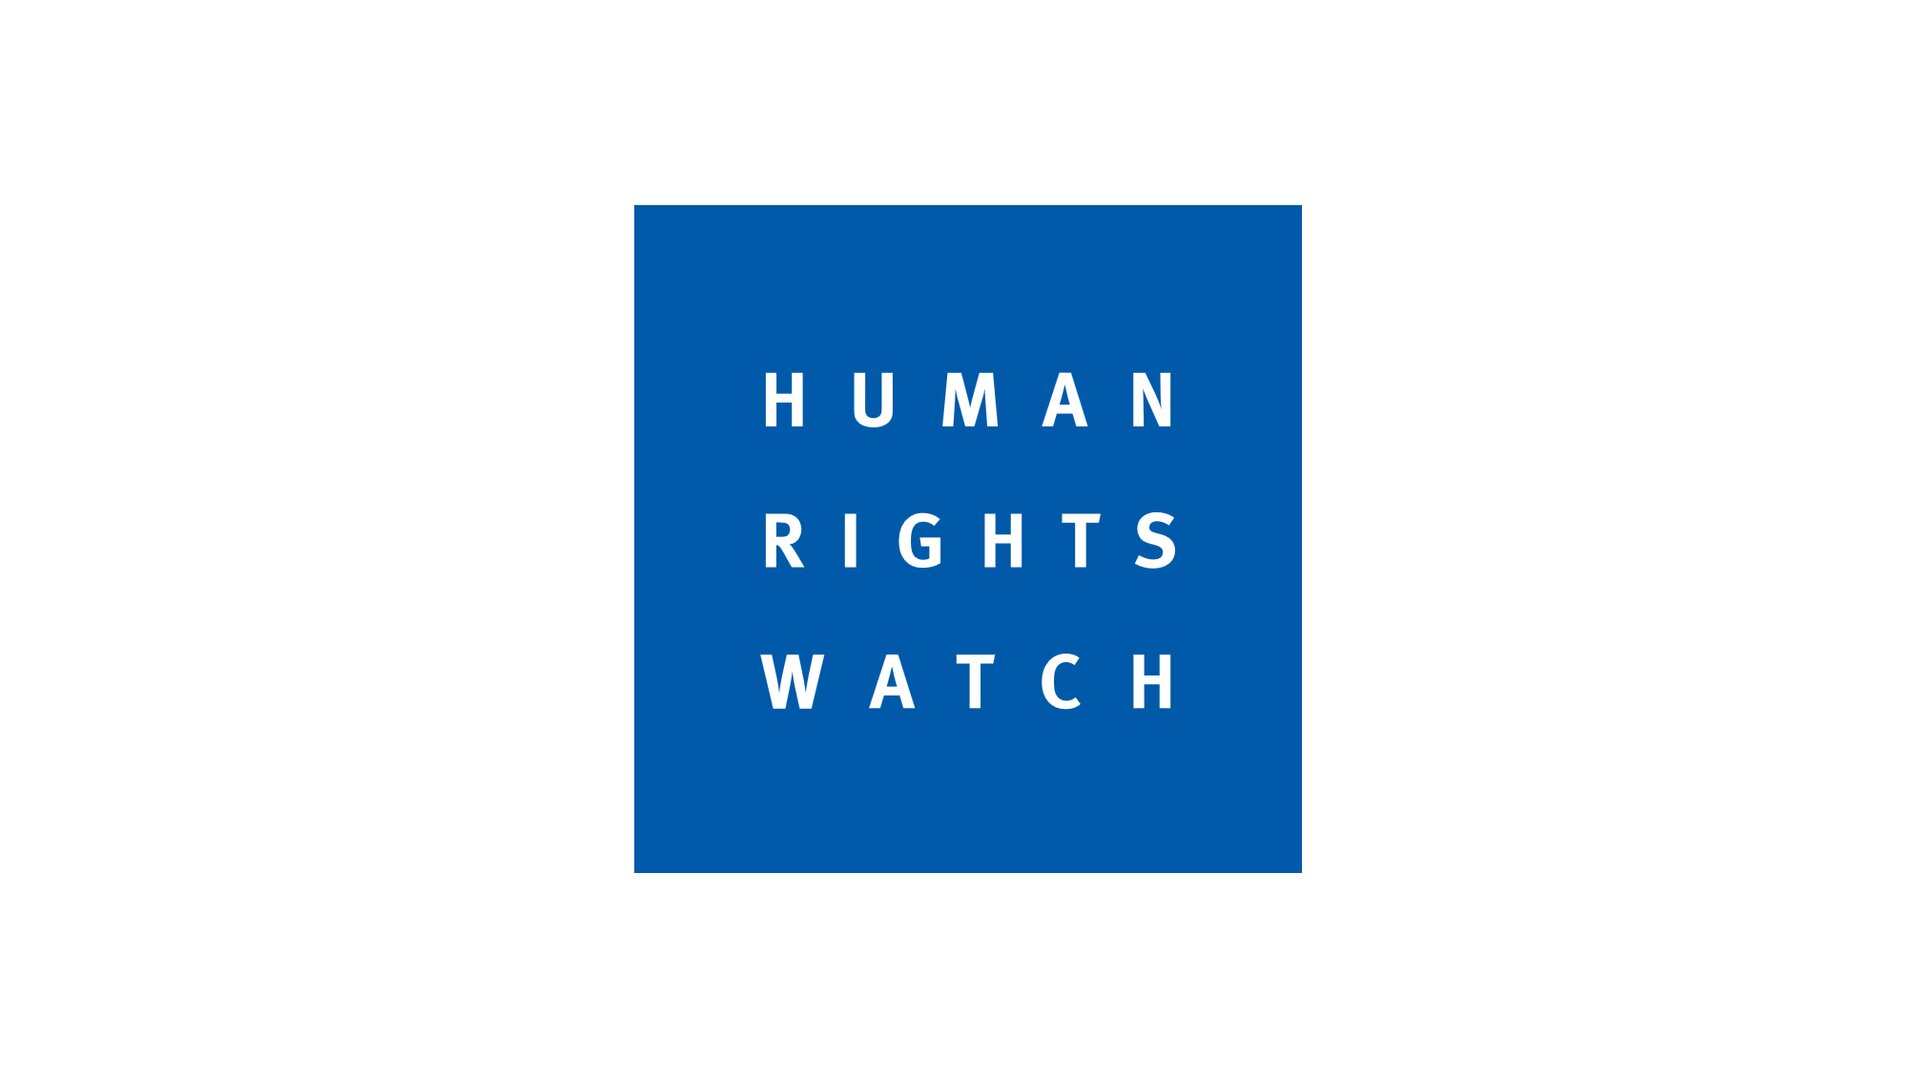 Human Rights Watch (HRW) to pozarządowa organizacja zajmująca się ochroną praw człowieka Źródło: Mononomic, Human Rights Watch (HRW) to pozarządowa organizacja zajmująca się ochroną praw człowieka, licencja: CC 0.